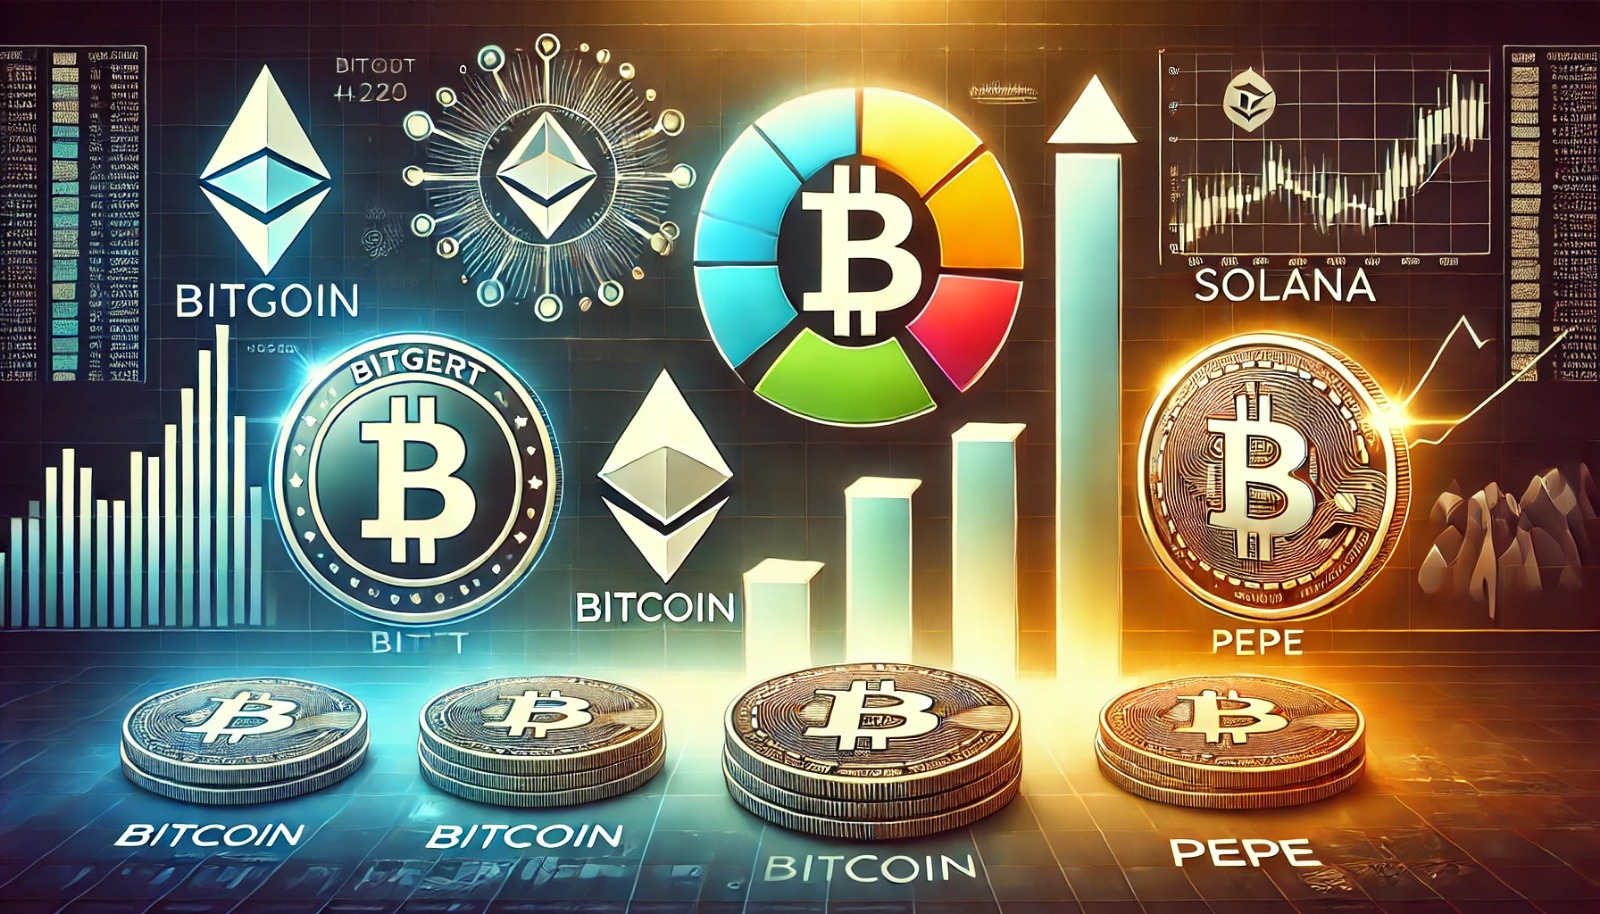 投資戦略: Bitgert、Bitcoin、Solana、Pepe でポートフォリオを多様化する